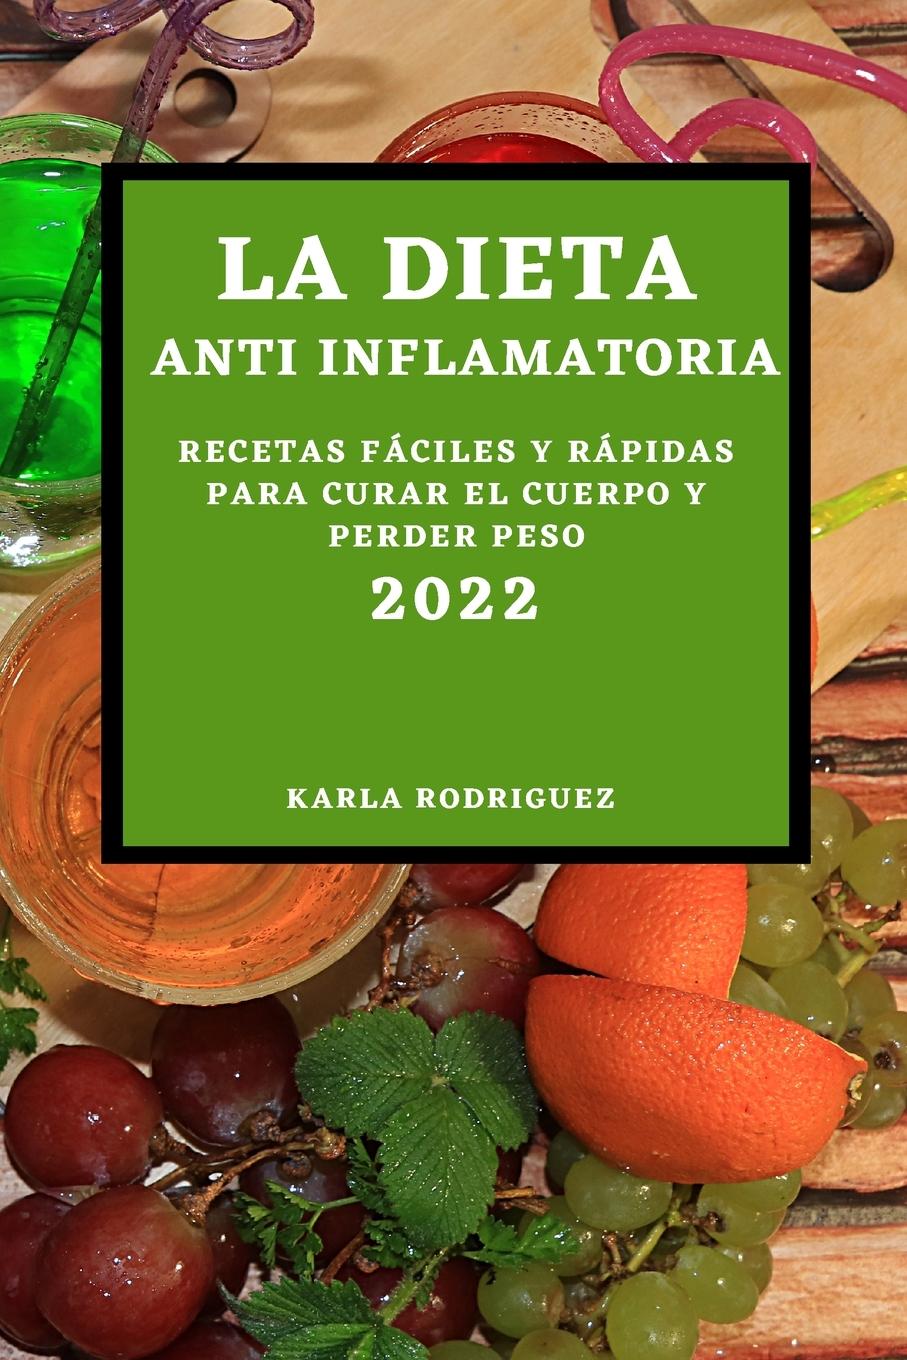 Книга Dieta Anti Inflamatoria 2022 